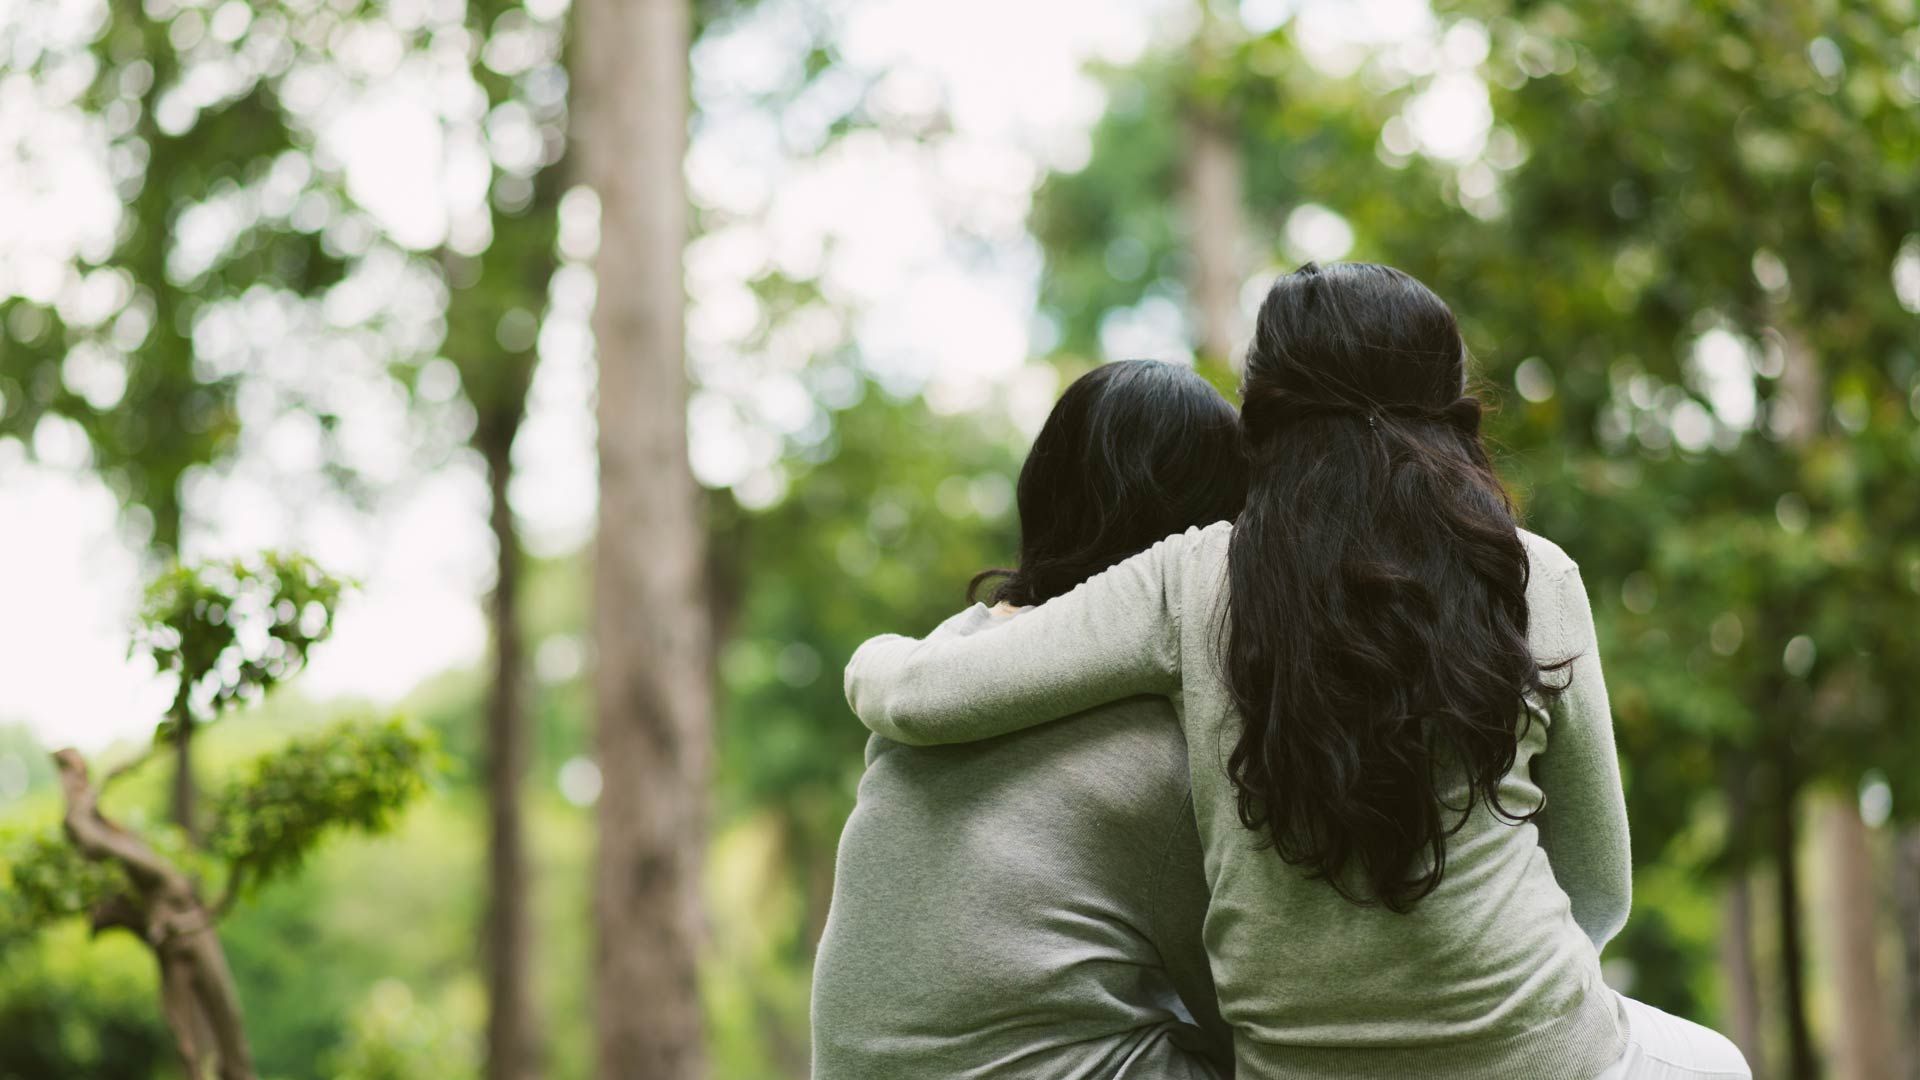 Ce que les premiers soins en santé mentale m'ont appris : comment être un meilleur ami